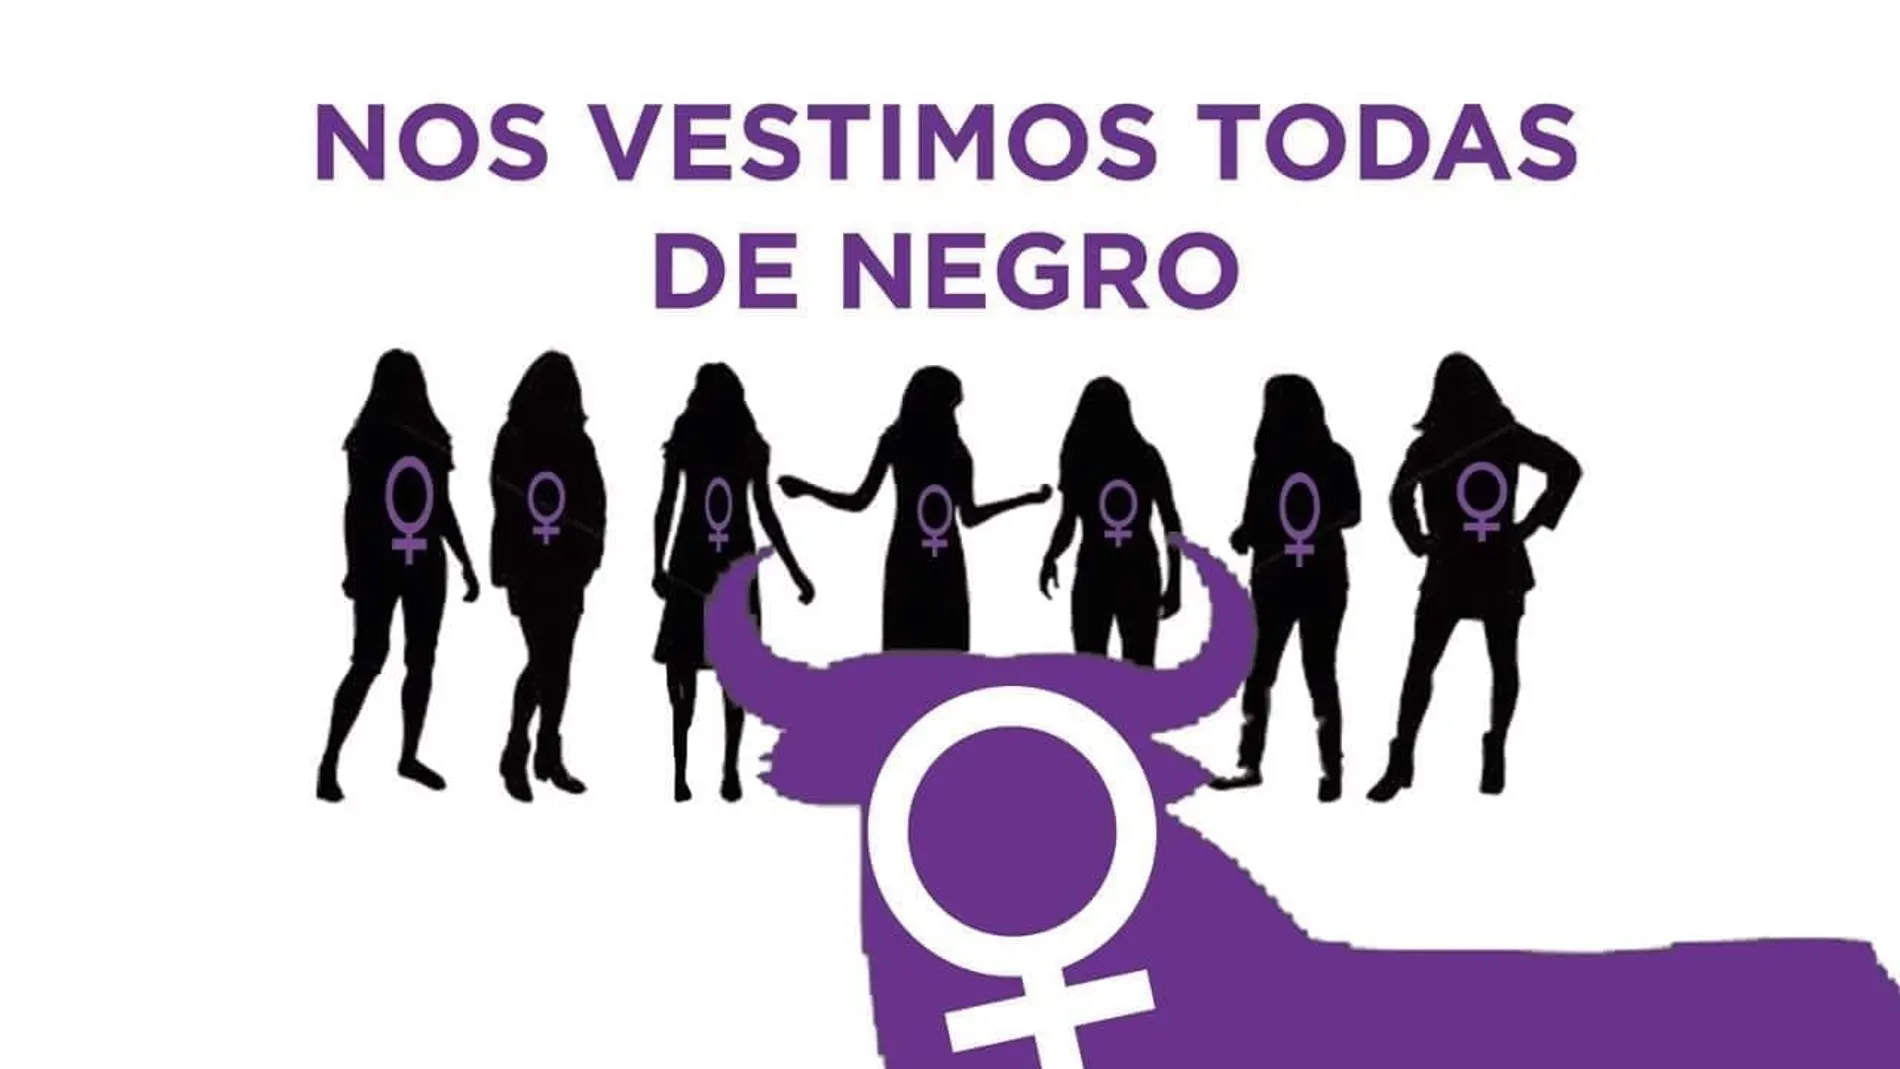 Convocatoria feminista para llevar camisetas negras en el chupinazo